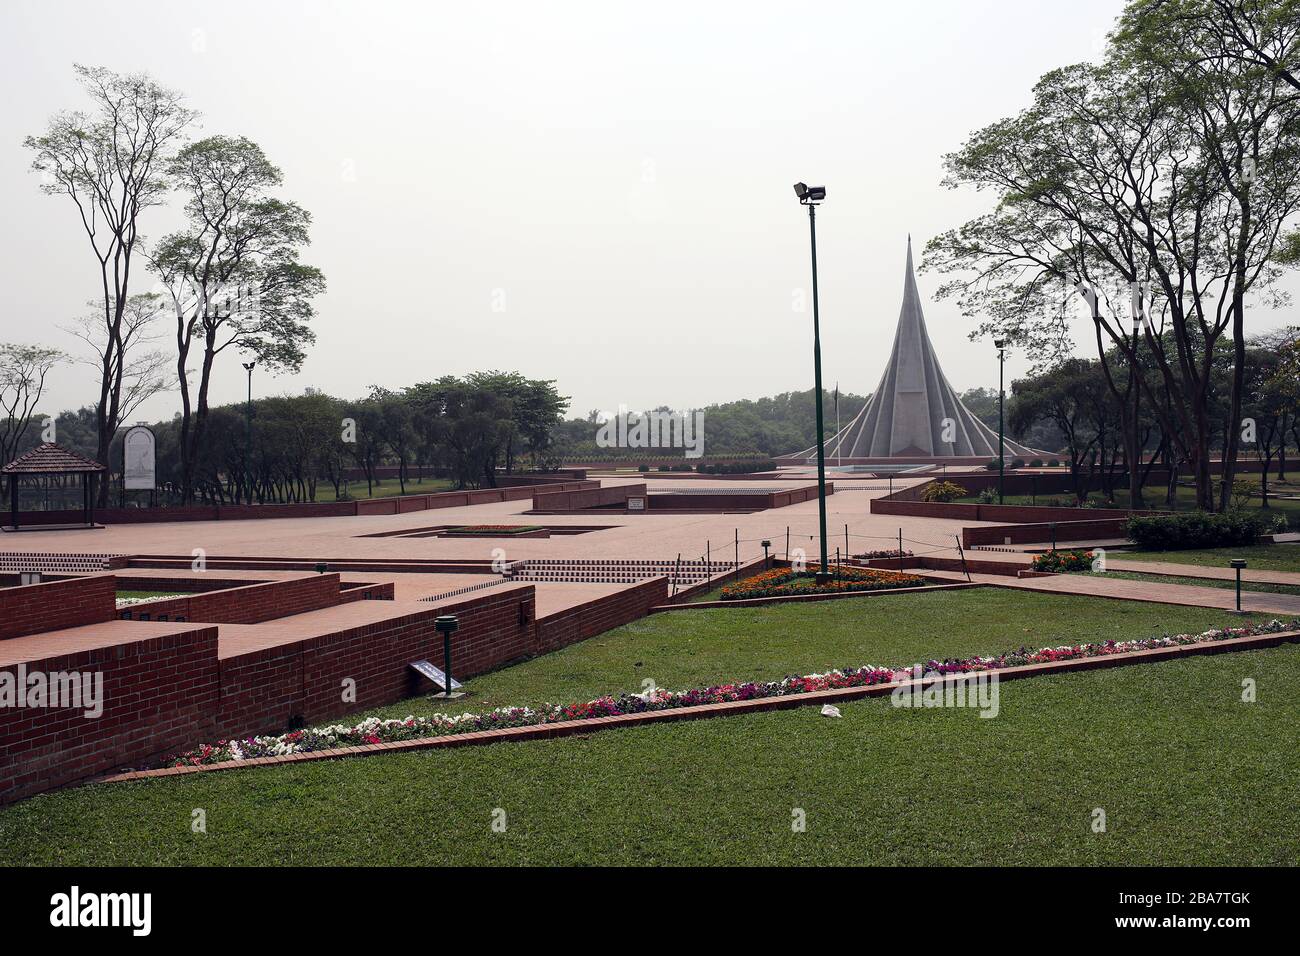 Dhaka, Bangladesch. Februar 2020. Das Nationale Denkmal in Savar am Rande der Hauptstadt ist am 26. März am Unabhängigkeitstag Bangladeschs verlassen worden, während das Land wegen der Coronavirus Pandemie in der Regel an diesem Tag mit Menschen zusammenhängt. Dhaka 26. märz 2020. Credit: Alamy/Alamy Live News Stockfoto